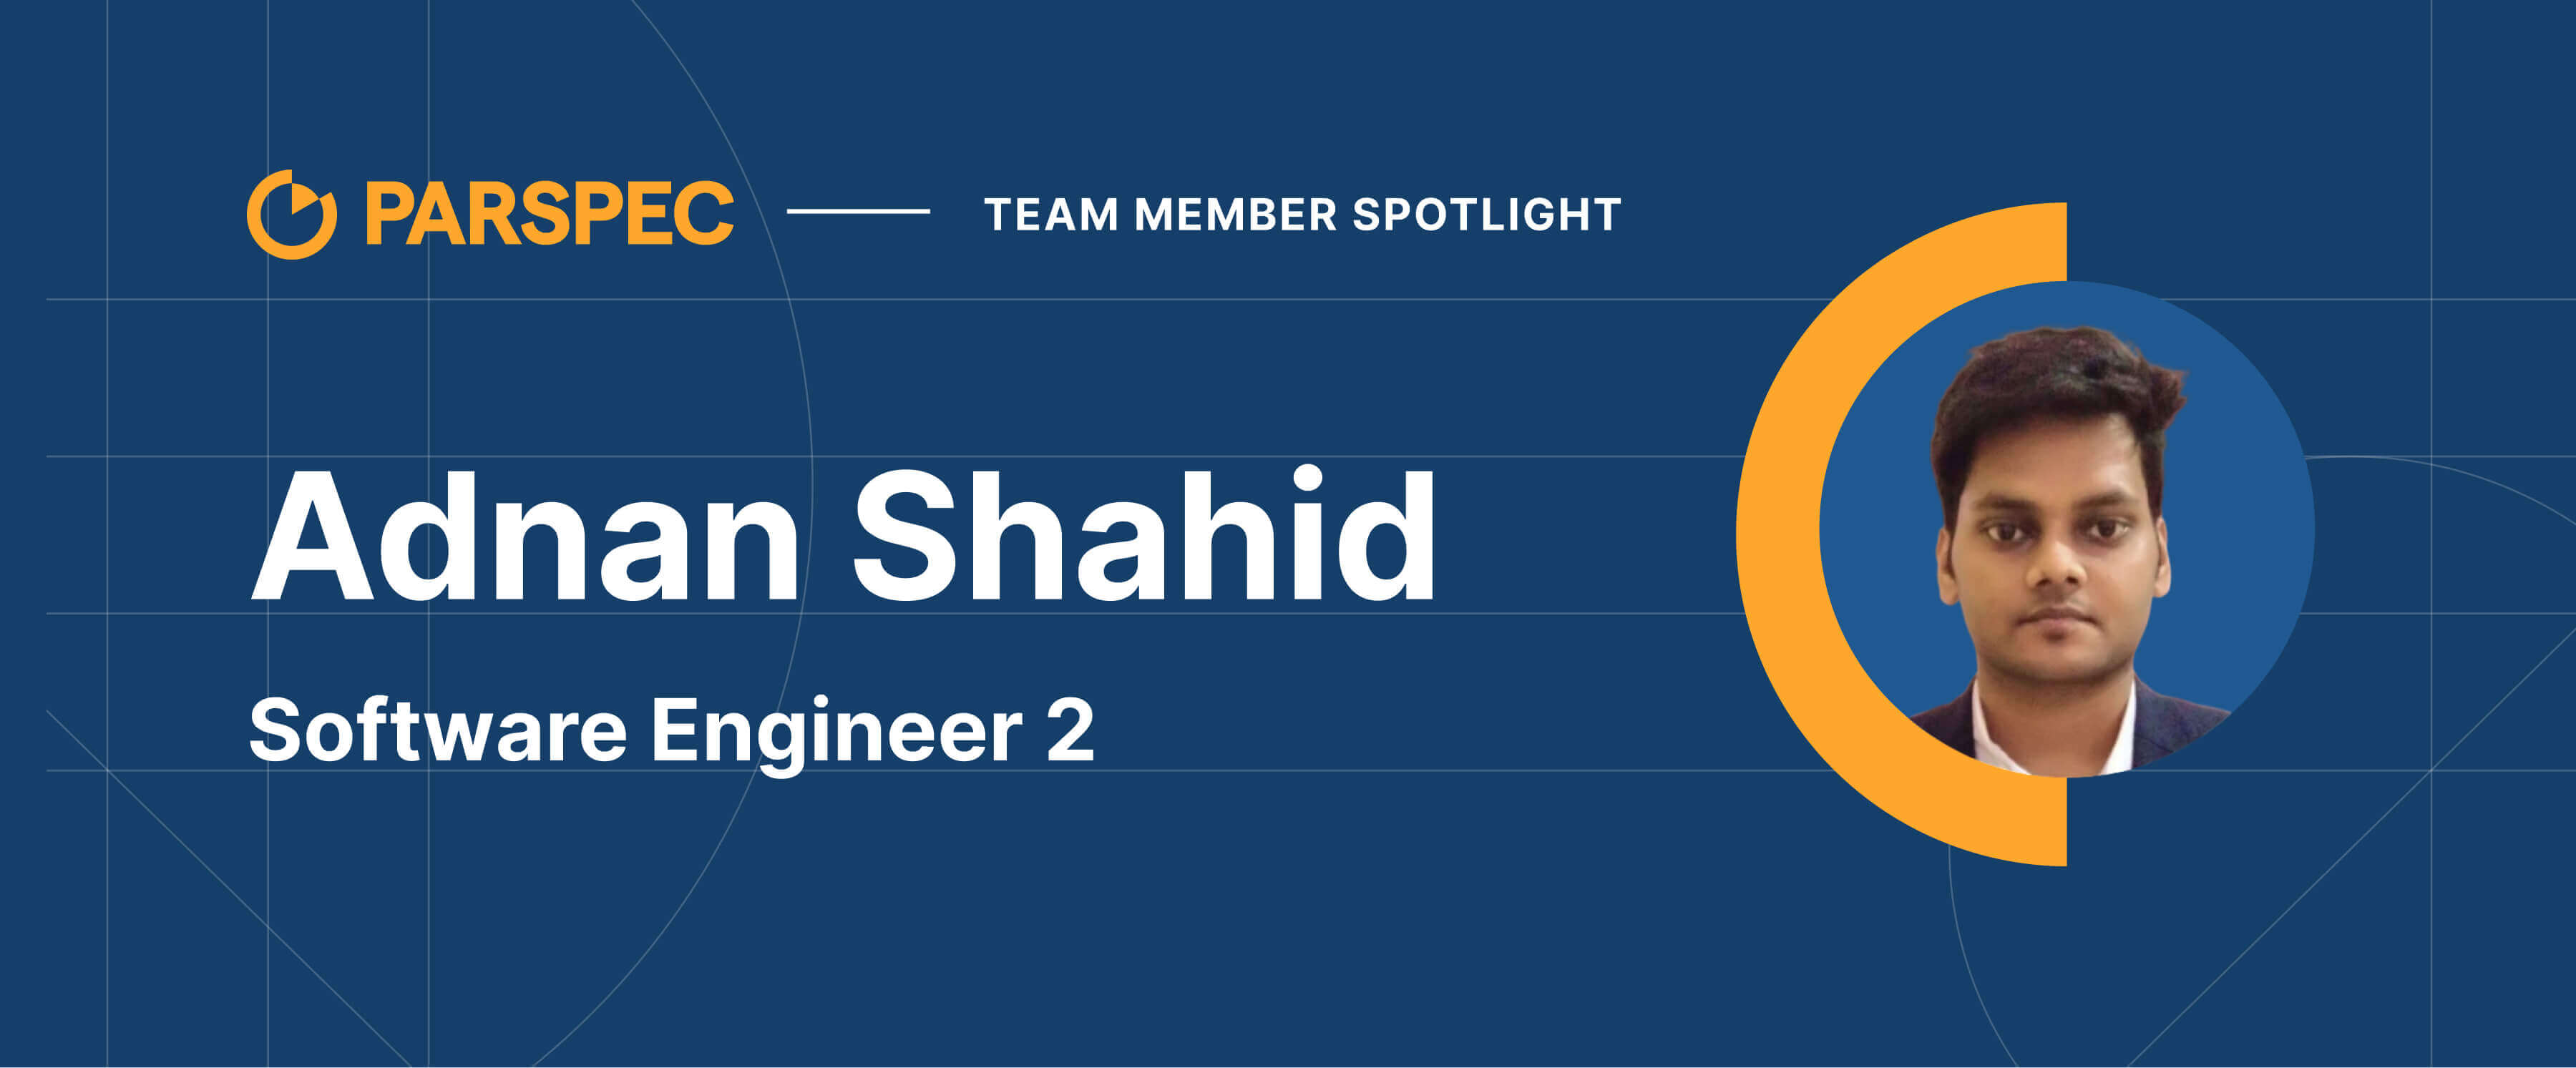 Team Member Spotlight - Adnan Shahid